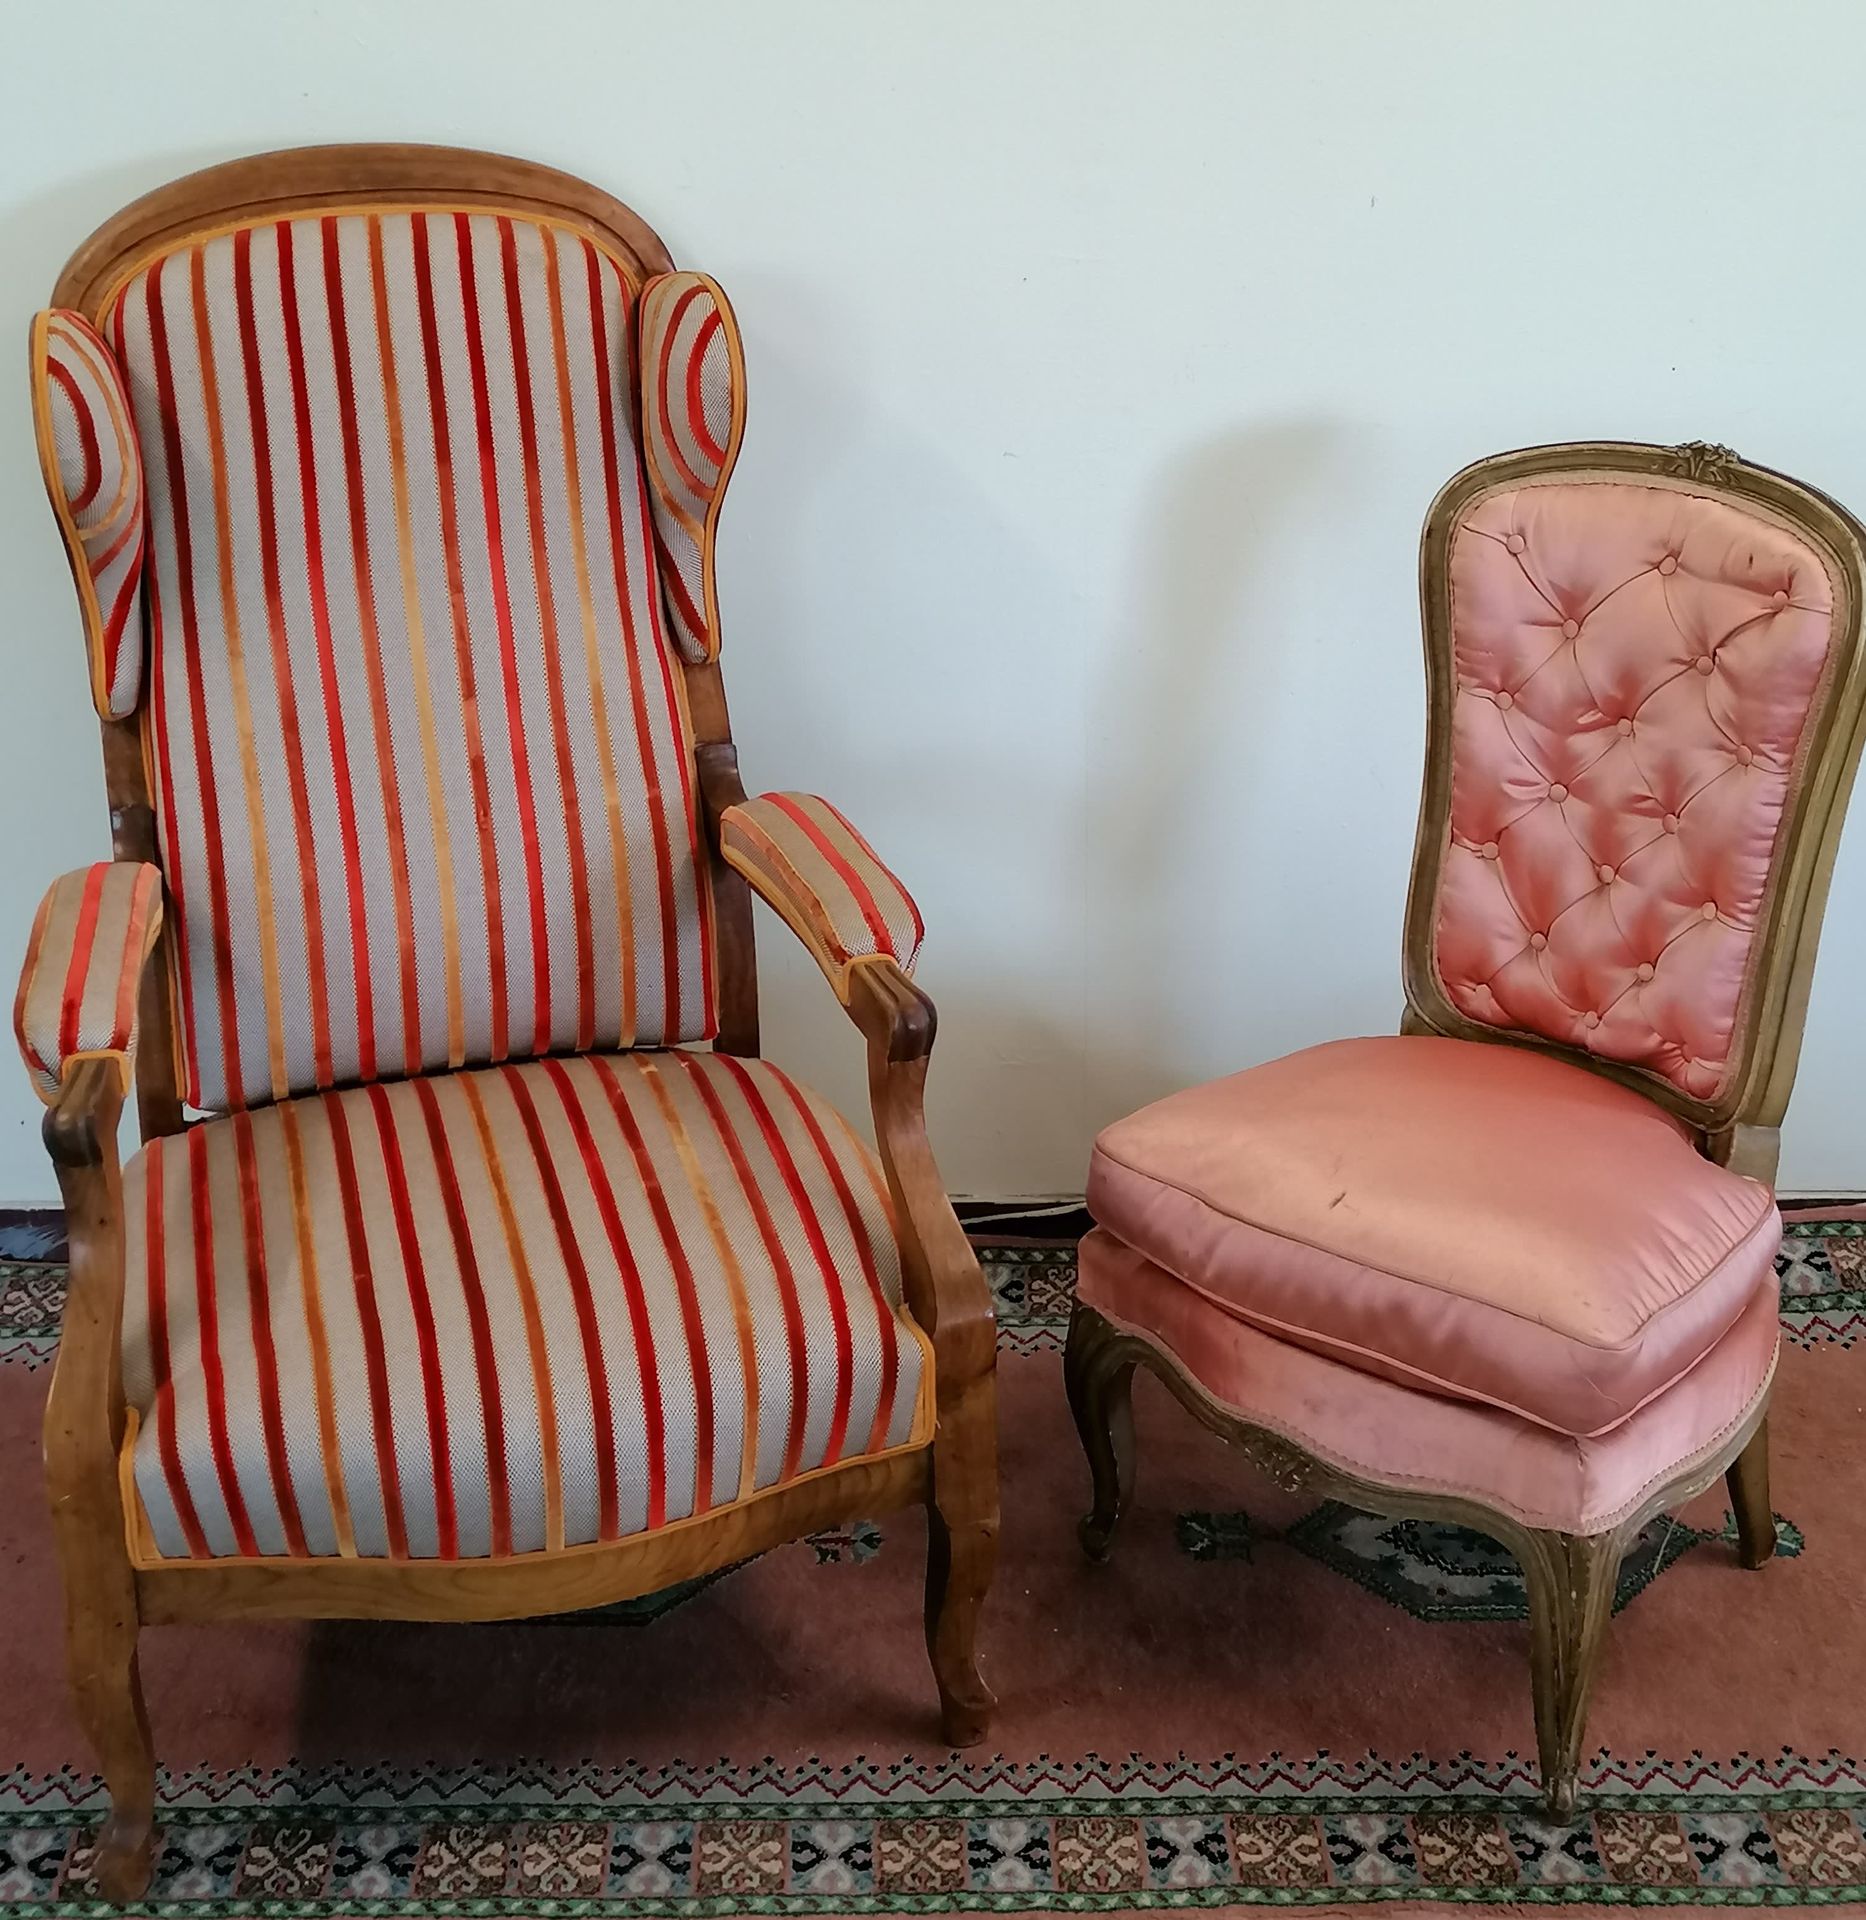 Null VOLTAIRE SESSEL MIT OHREN

Ein Sessel im Stil Louis XV ist angebracht.